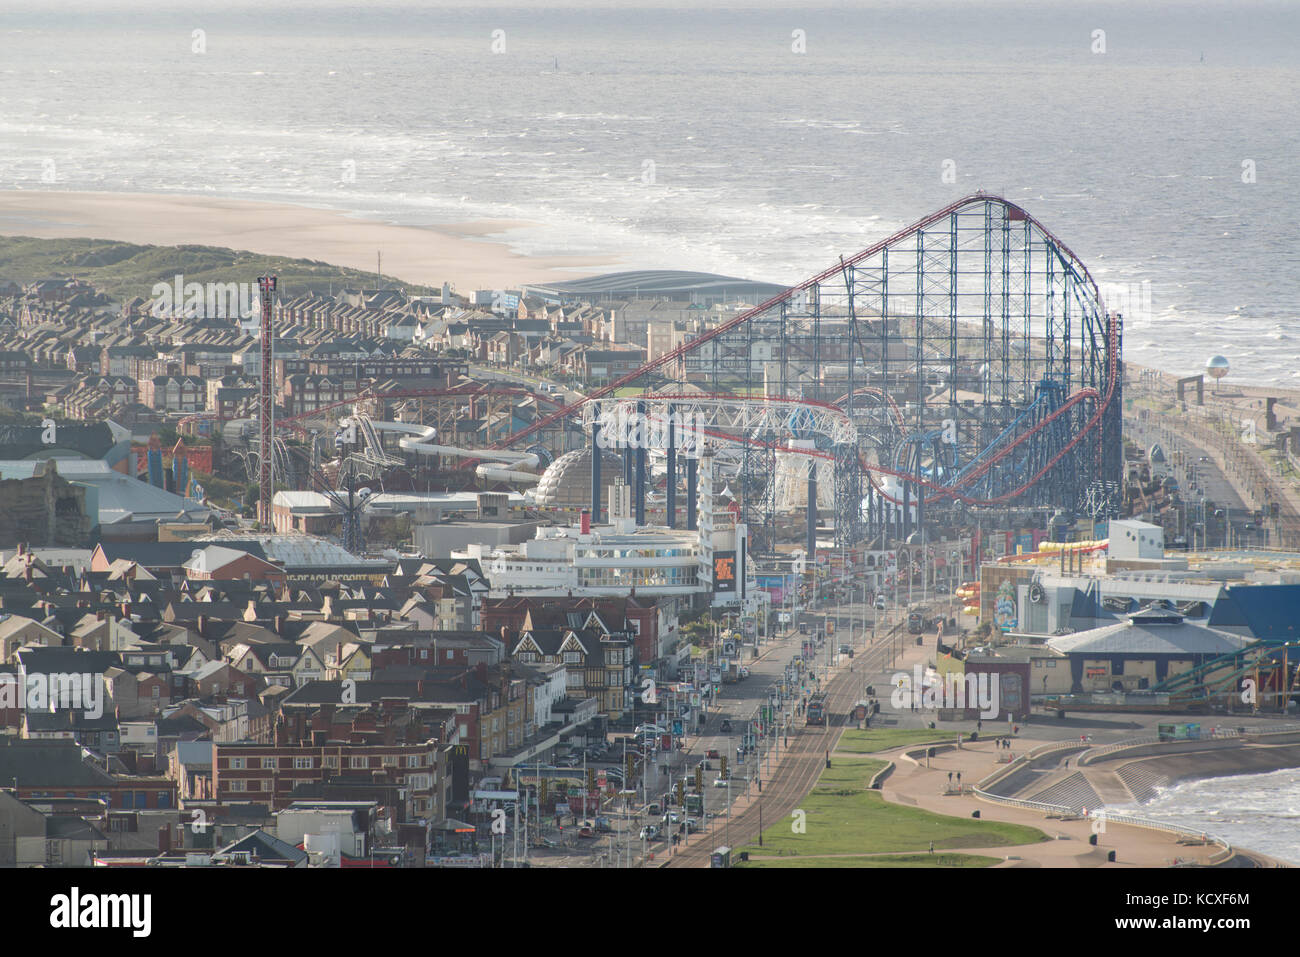 Immagine di Blackpool Pleasure Beach in un assolato pomeriggio estati. credito lee ramsden / alamy Foto Stock